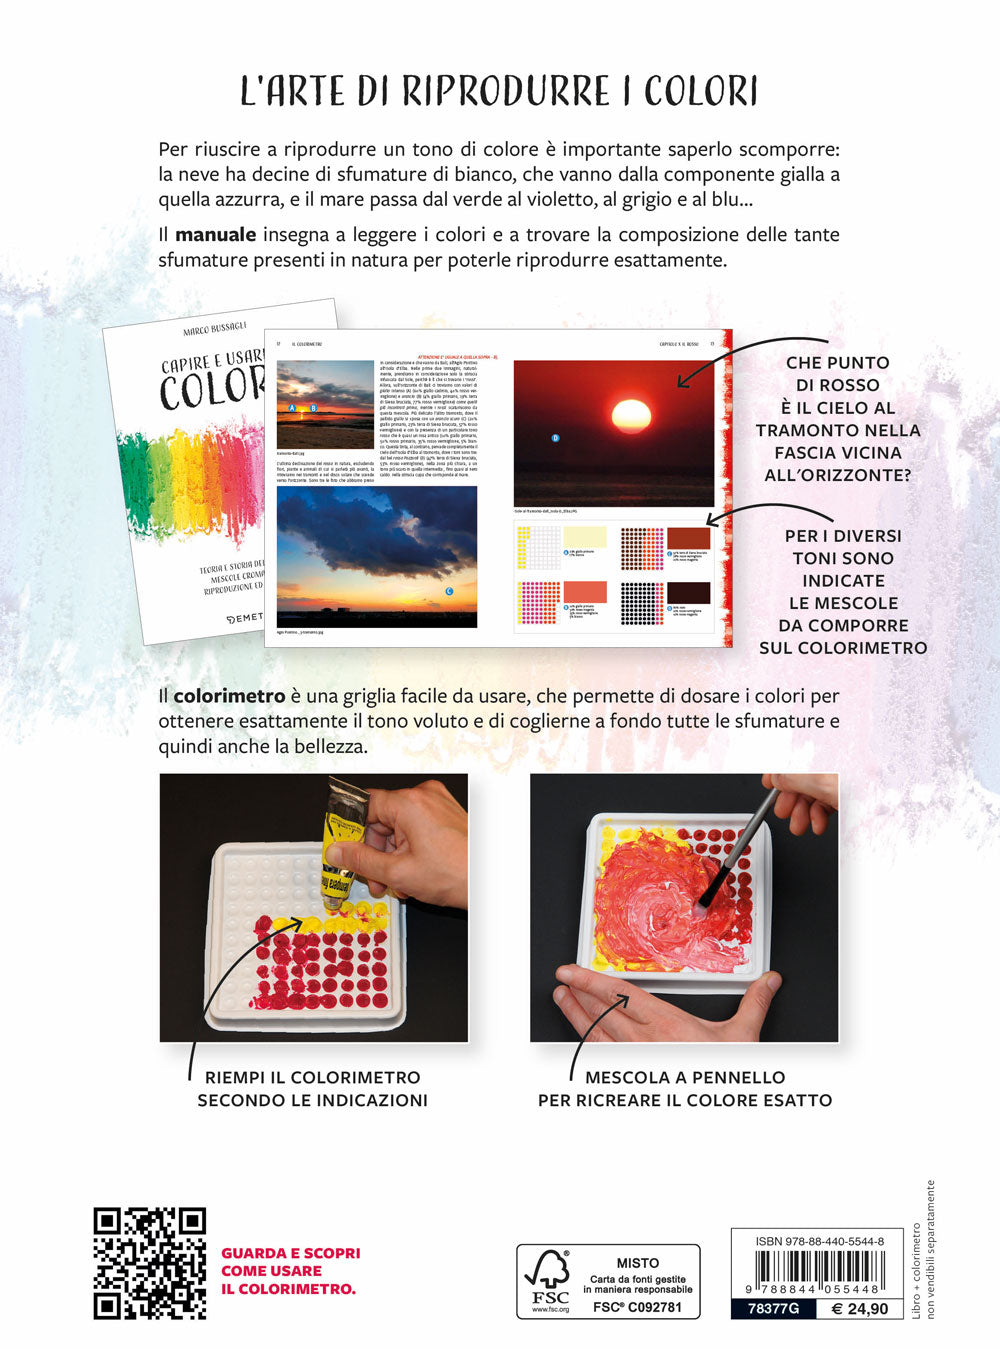 Capire e usare i colori::Teoria e storia - Mescole cromatiche - Riproduzione ed esercizi